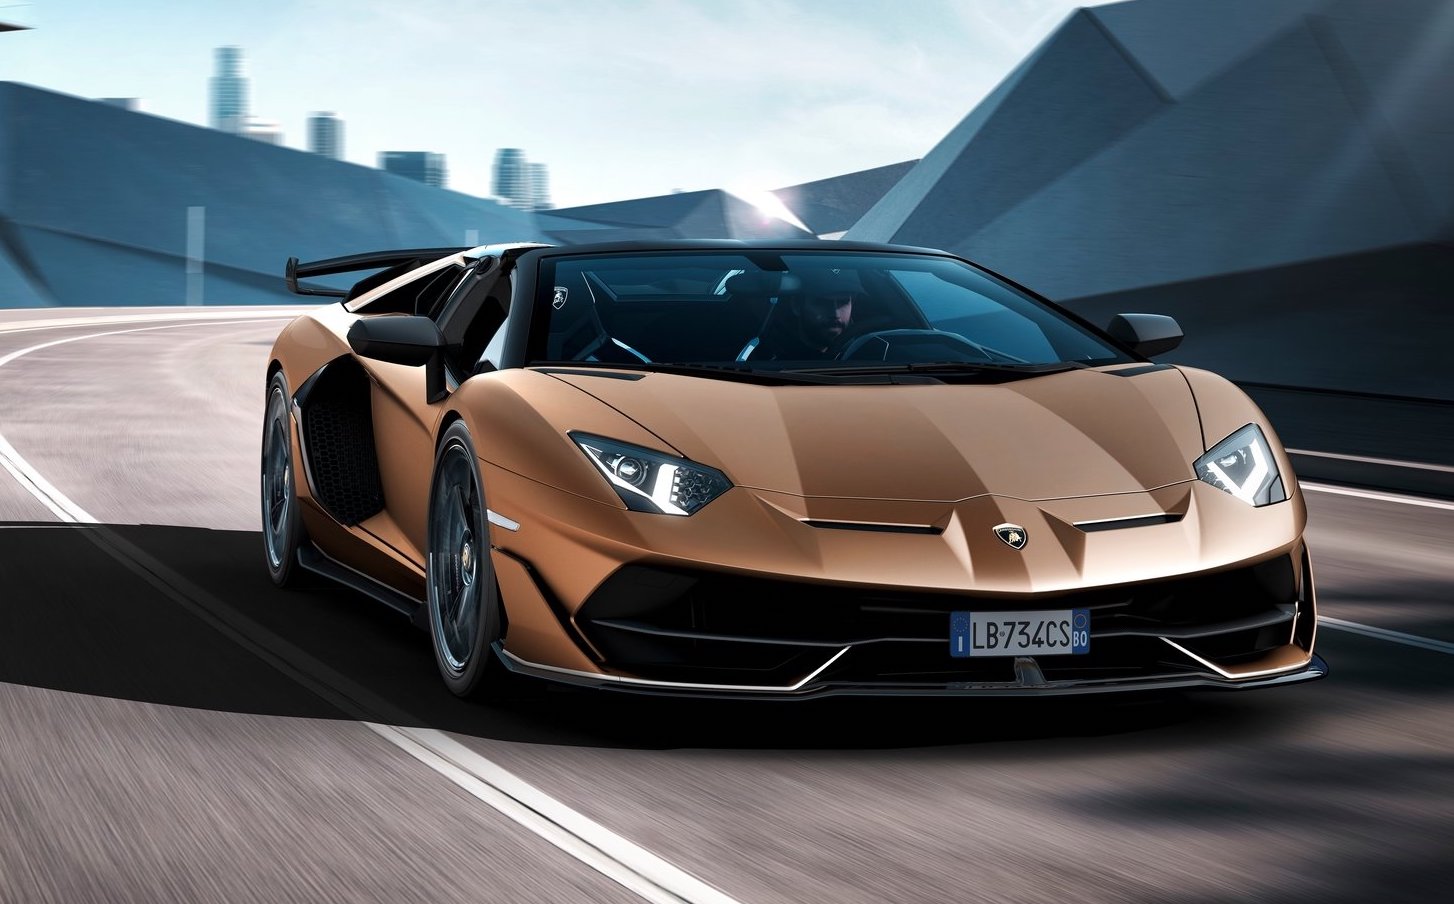 Lamborghini global sales down 9.0% in 2020